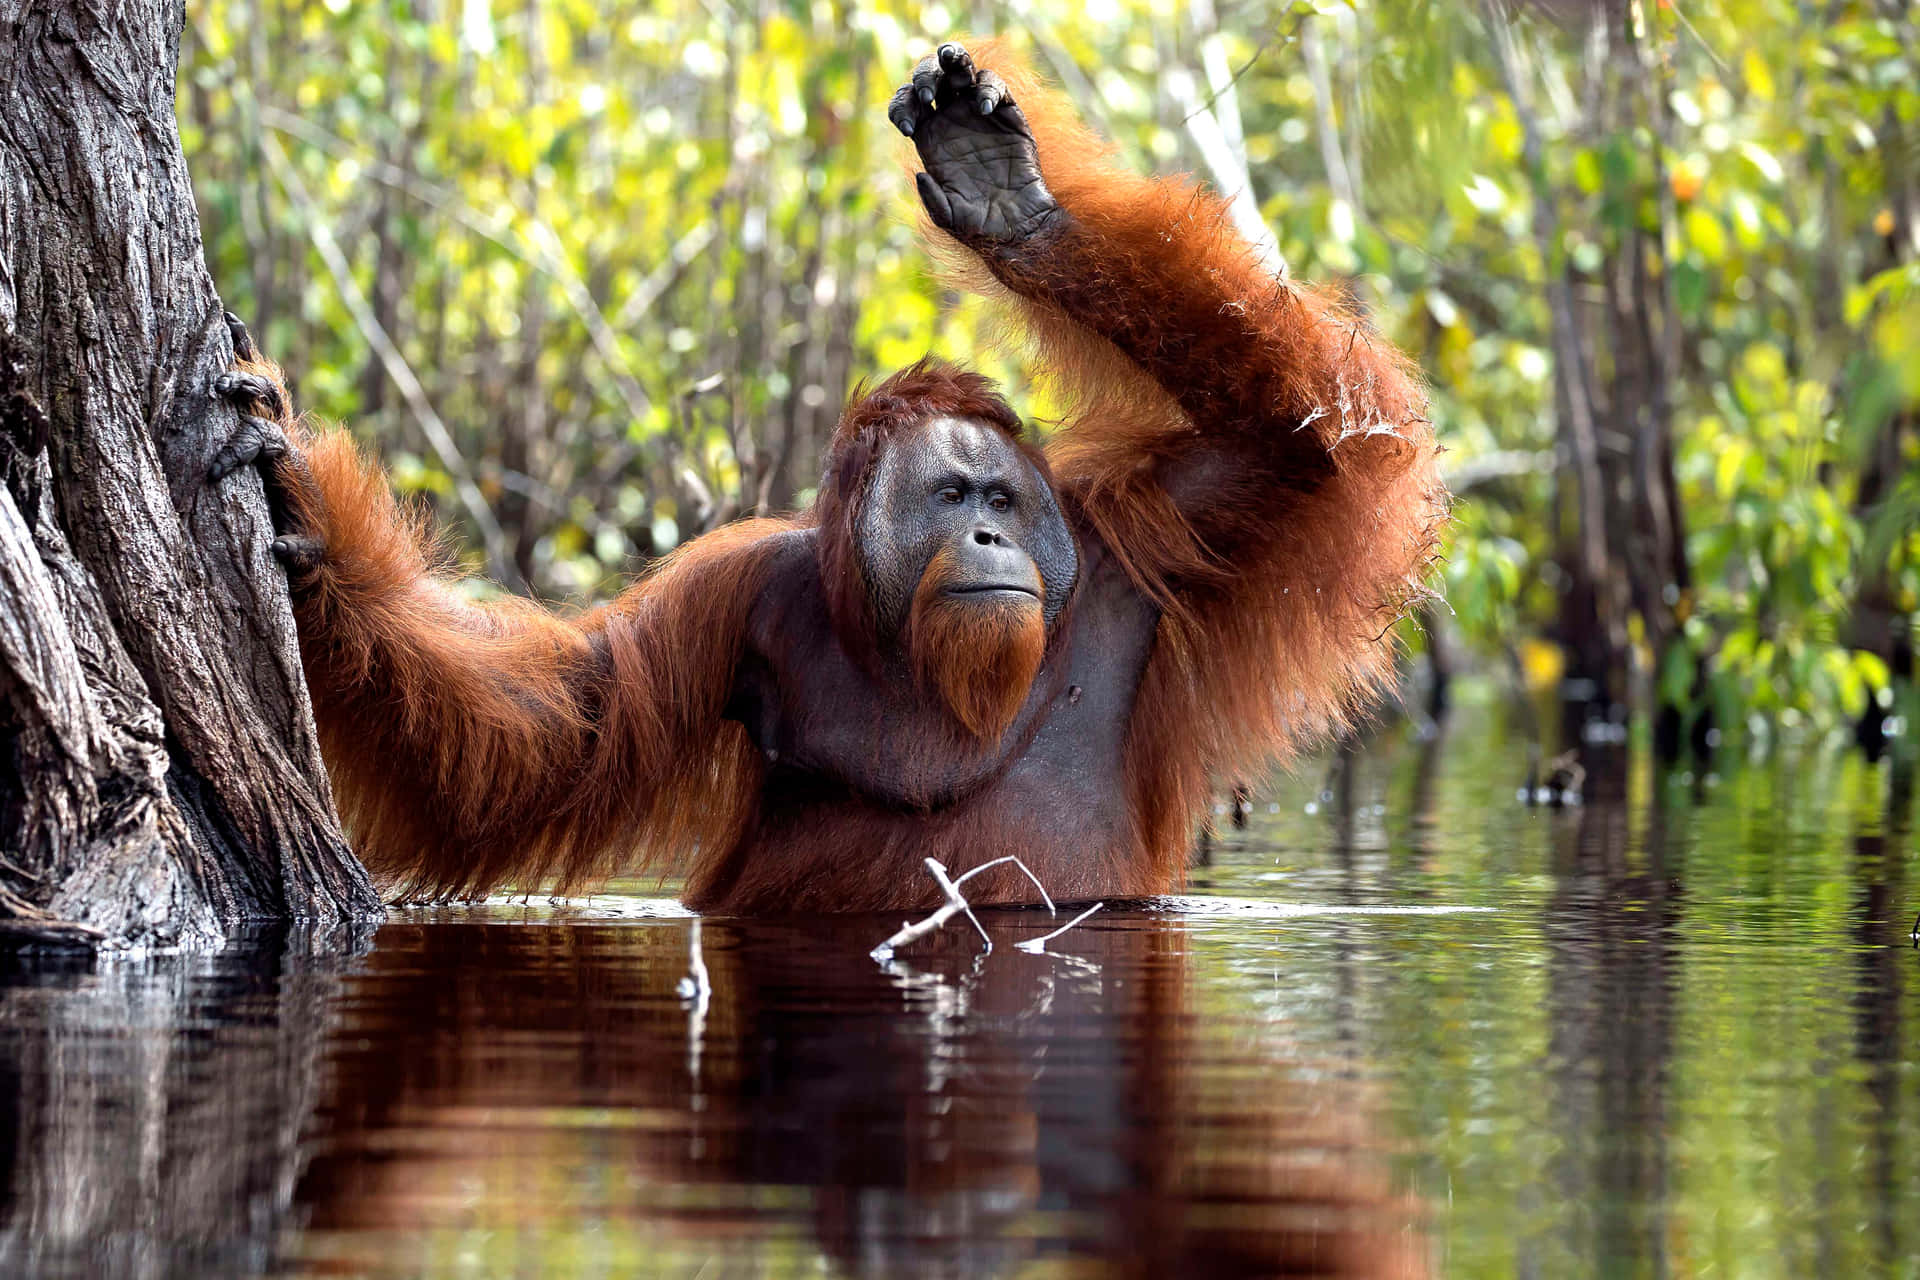 Unascimmia Orangutan In Pericolo Nel Suo Habitat Naturale.